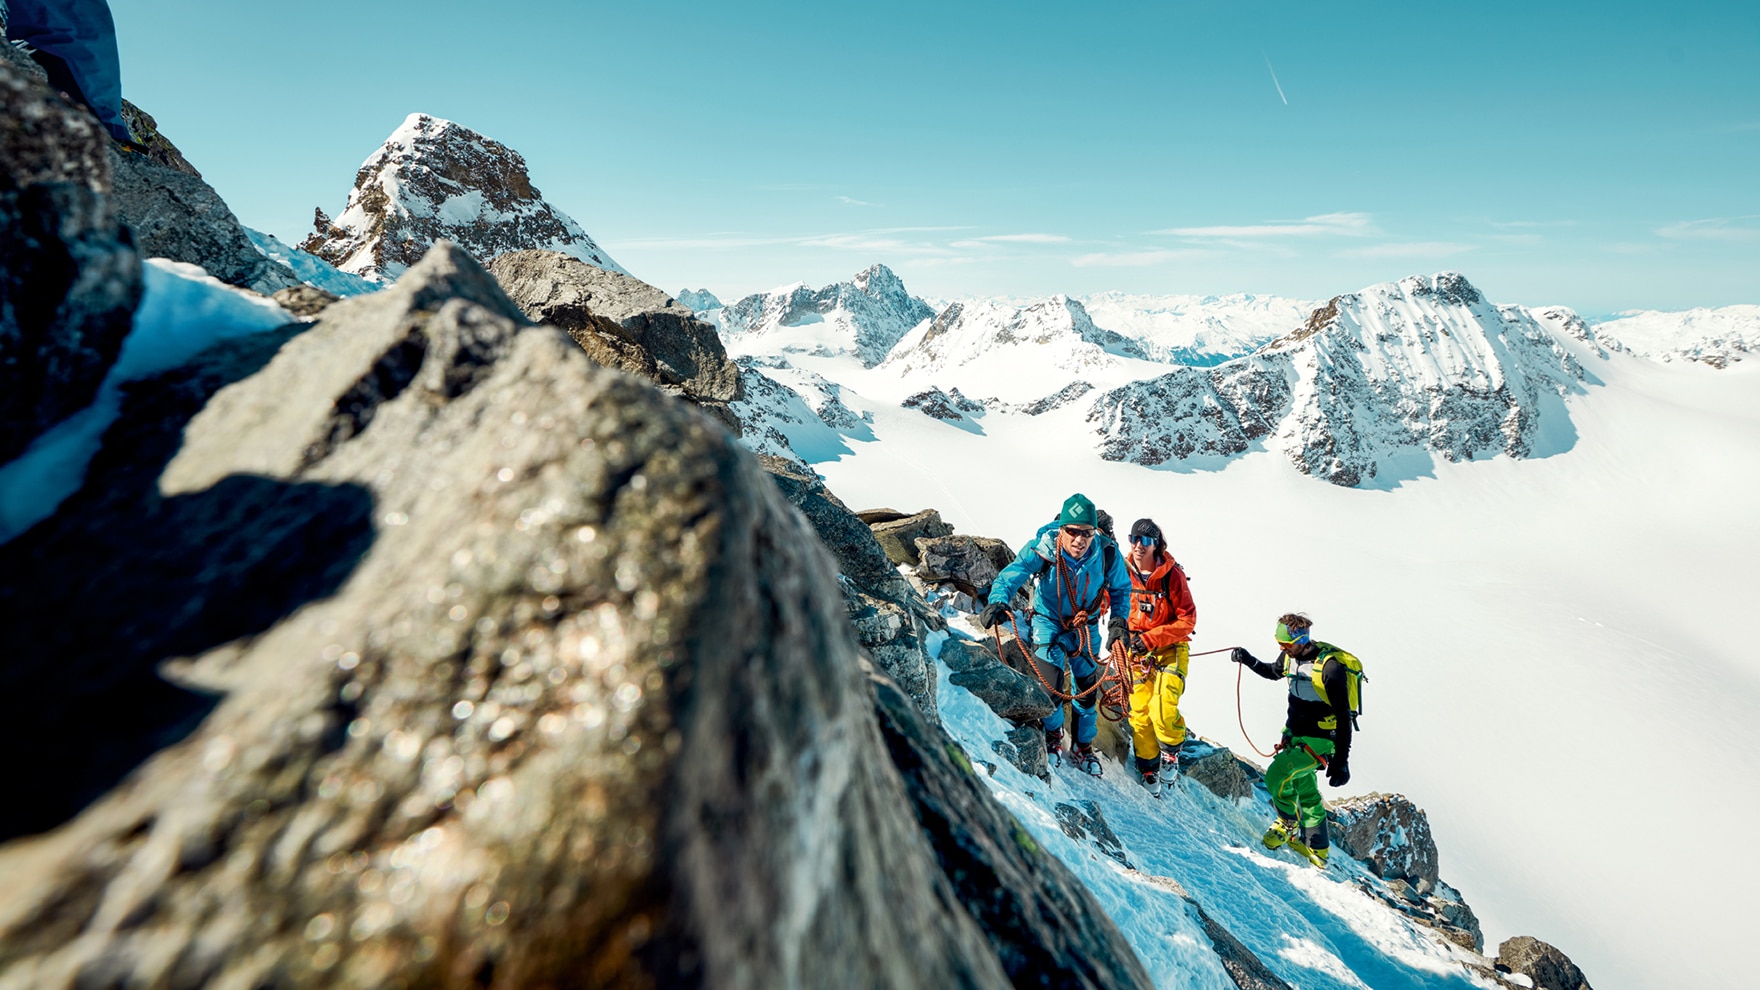 Die Skitour auf den Piz Buin ist nicht die einfachste aber eine durchwegs abwechslungsreiche mit einem wahrhaftig eindrücklichen Gipfelpanorama.